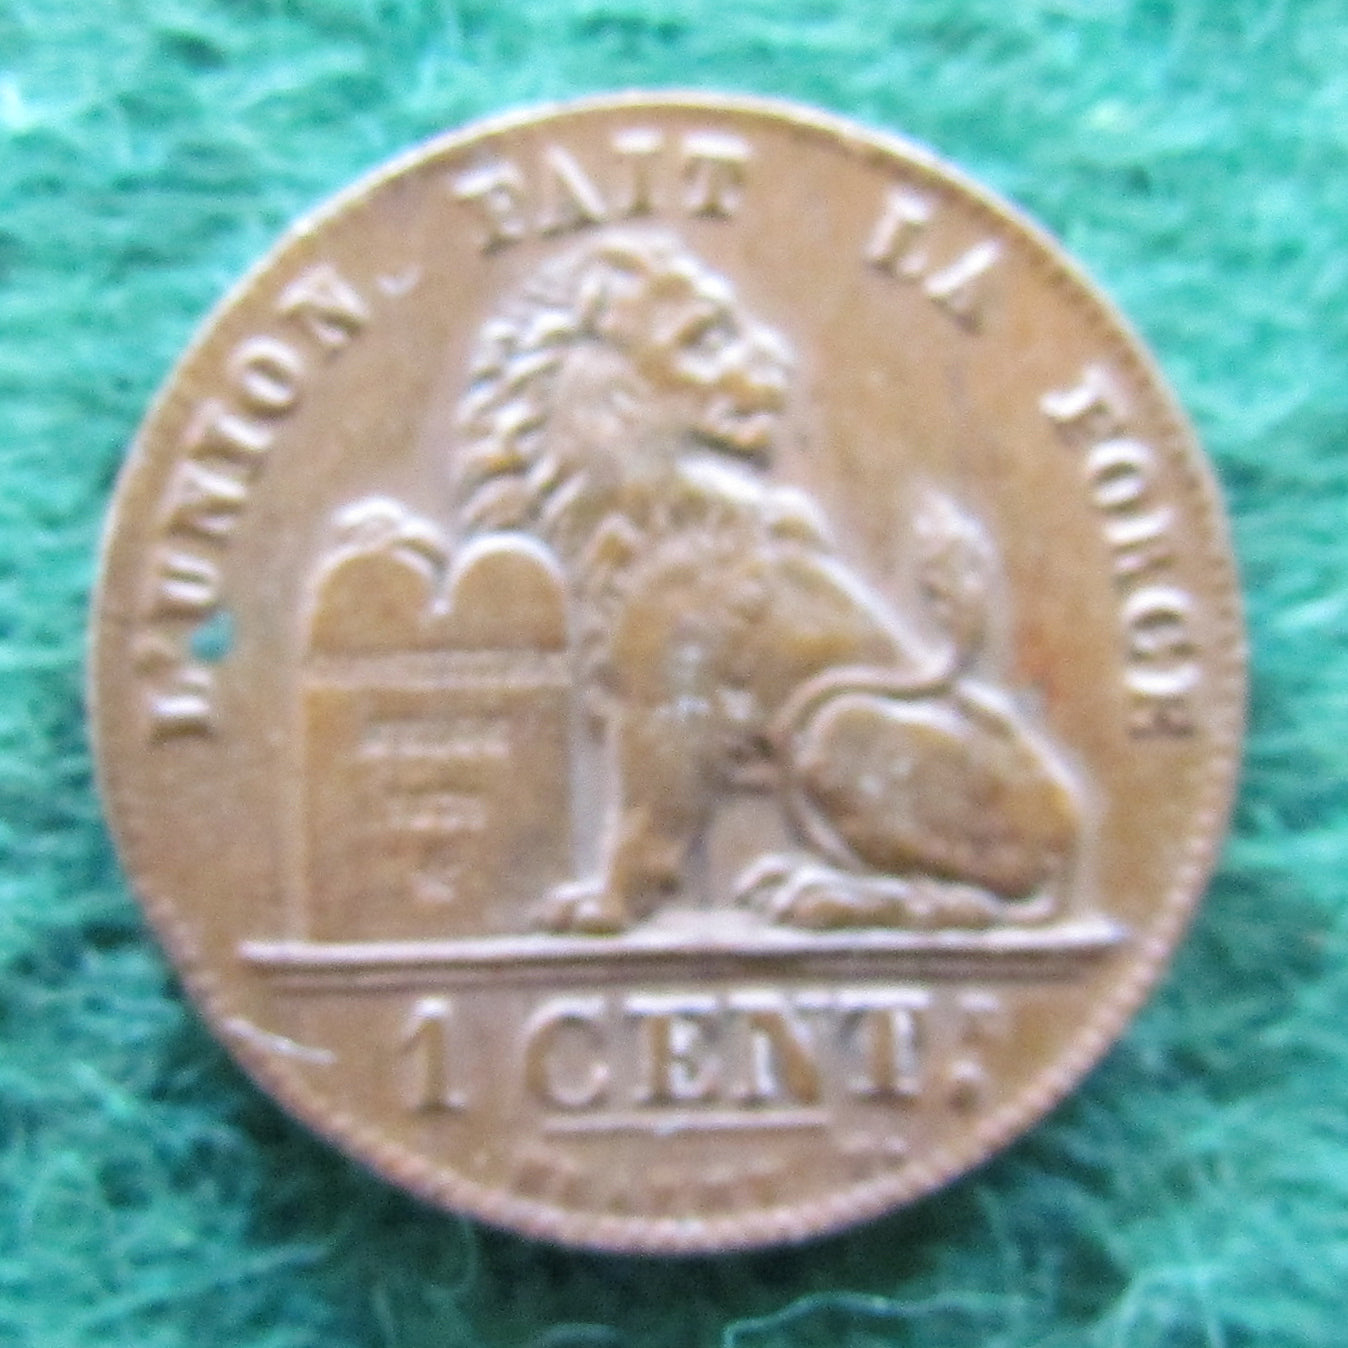 Belgium 1914 1 Centime Coin